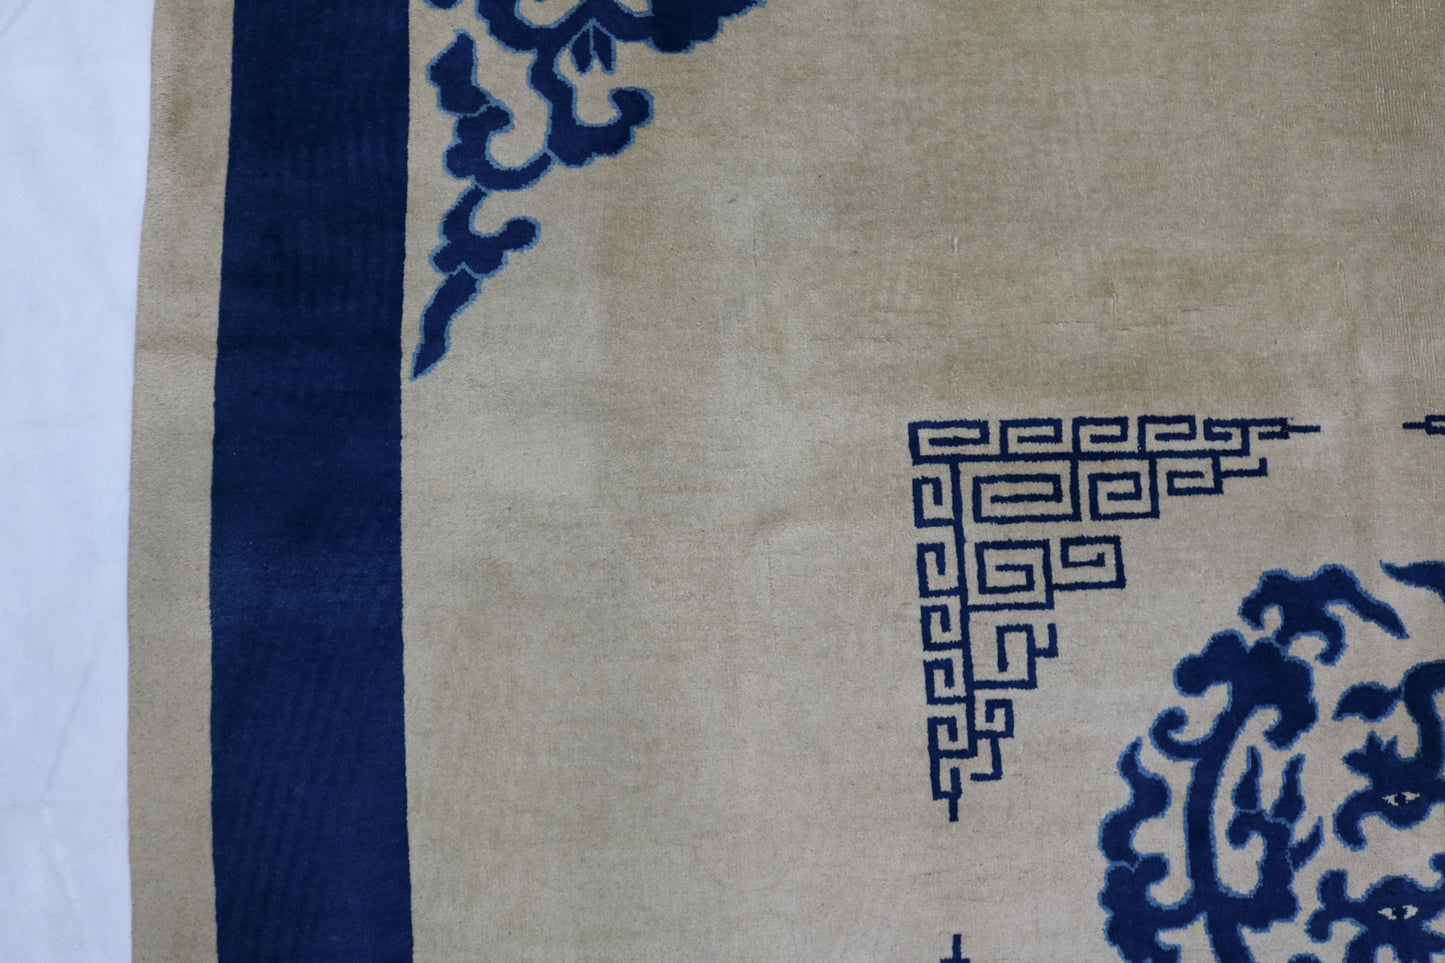 Antique Chinese Peking Carpet - Hakiemie Rug Gallery